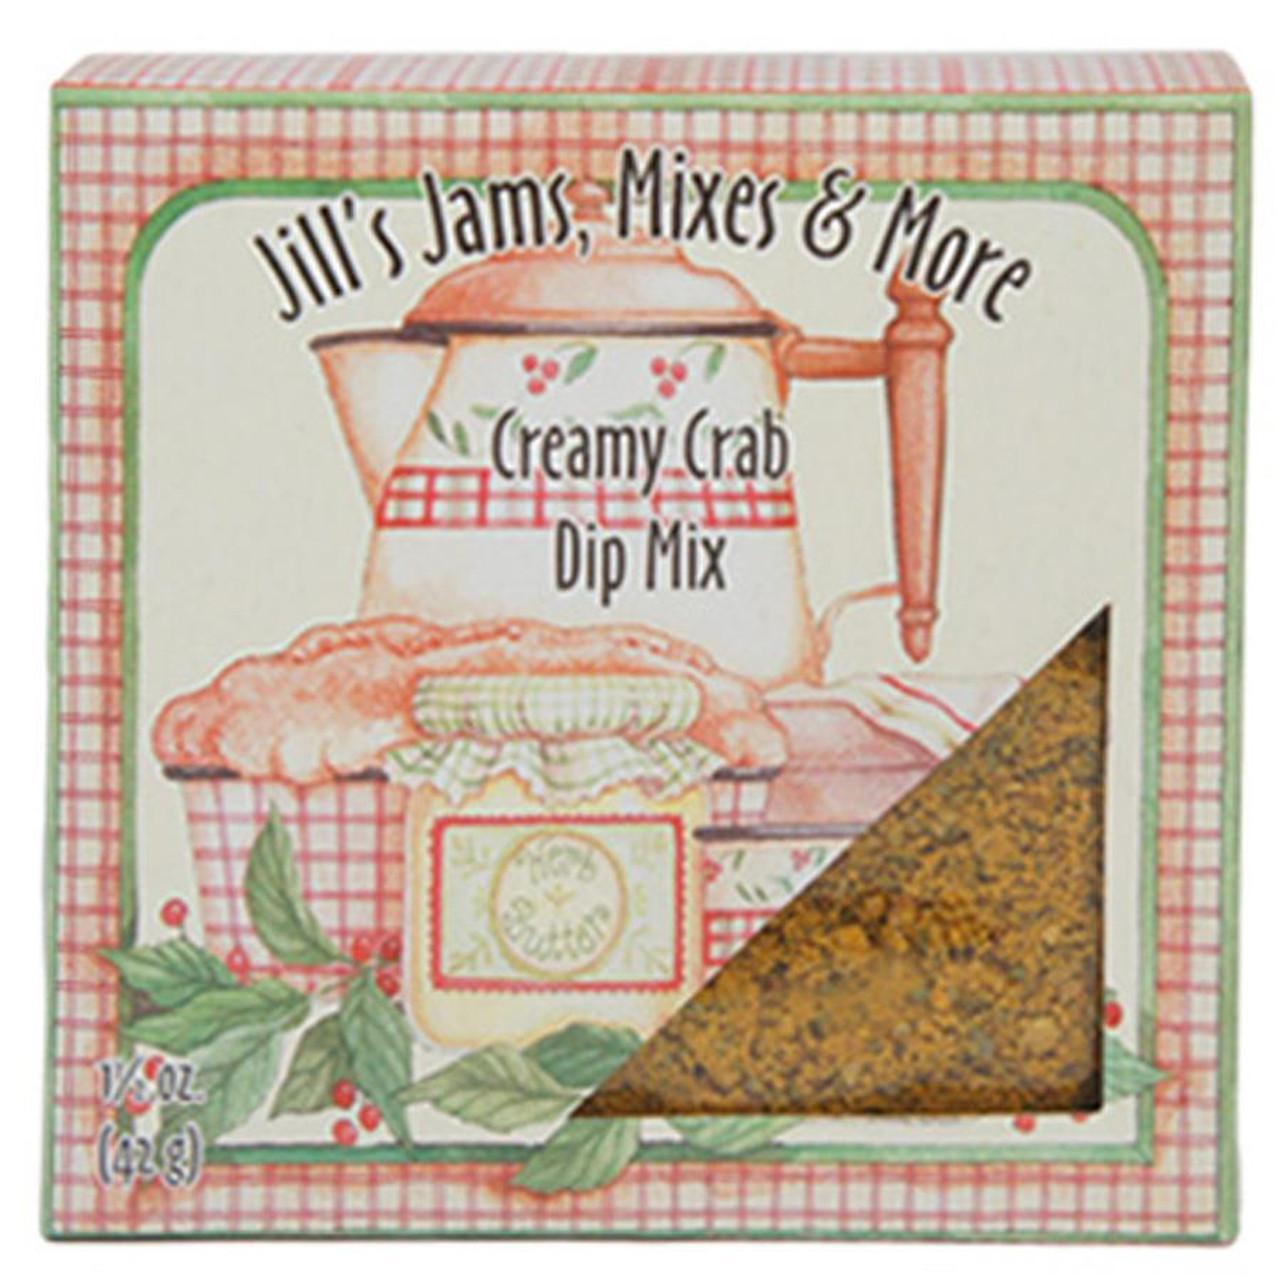 Jill's Jams, Mixes & More Creamy Crab Dip Mix